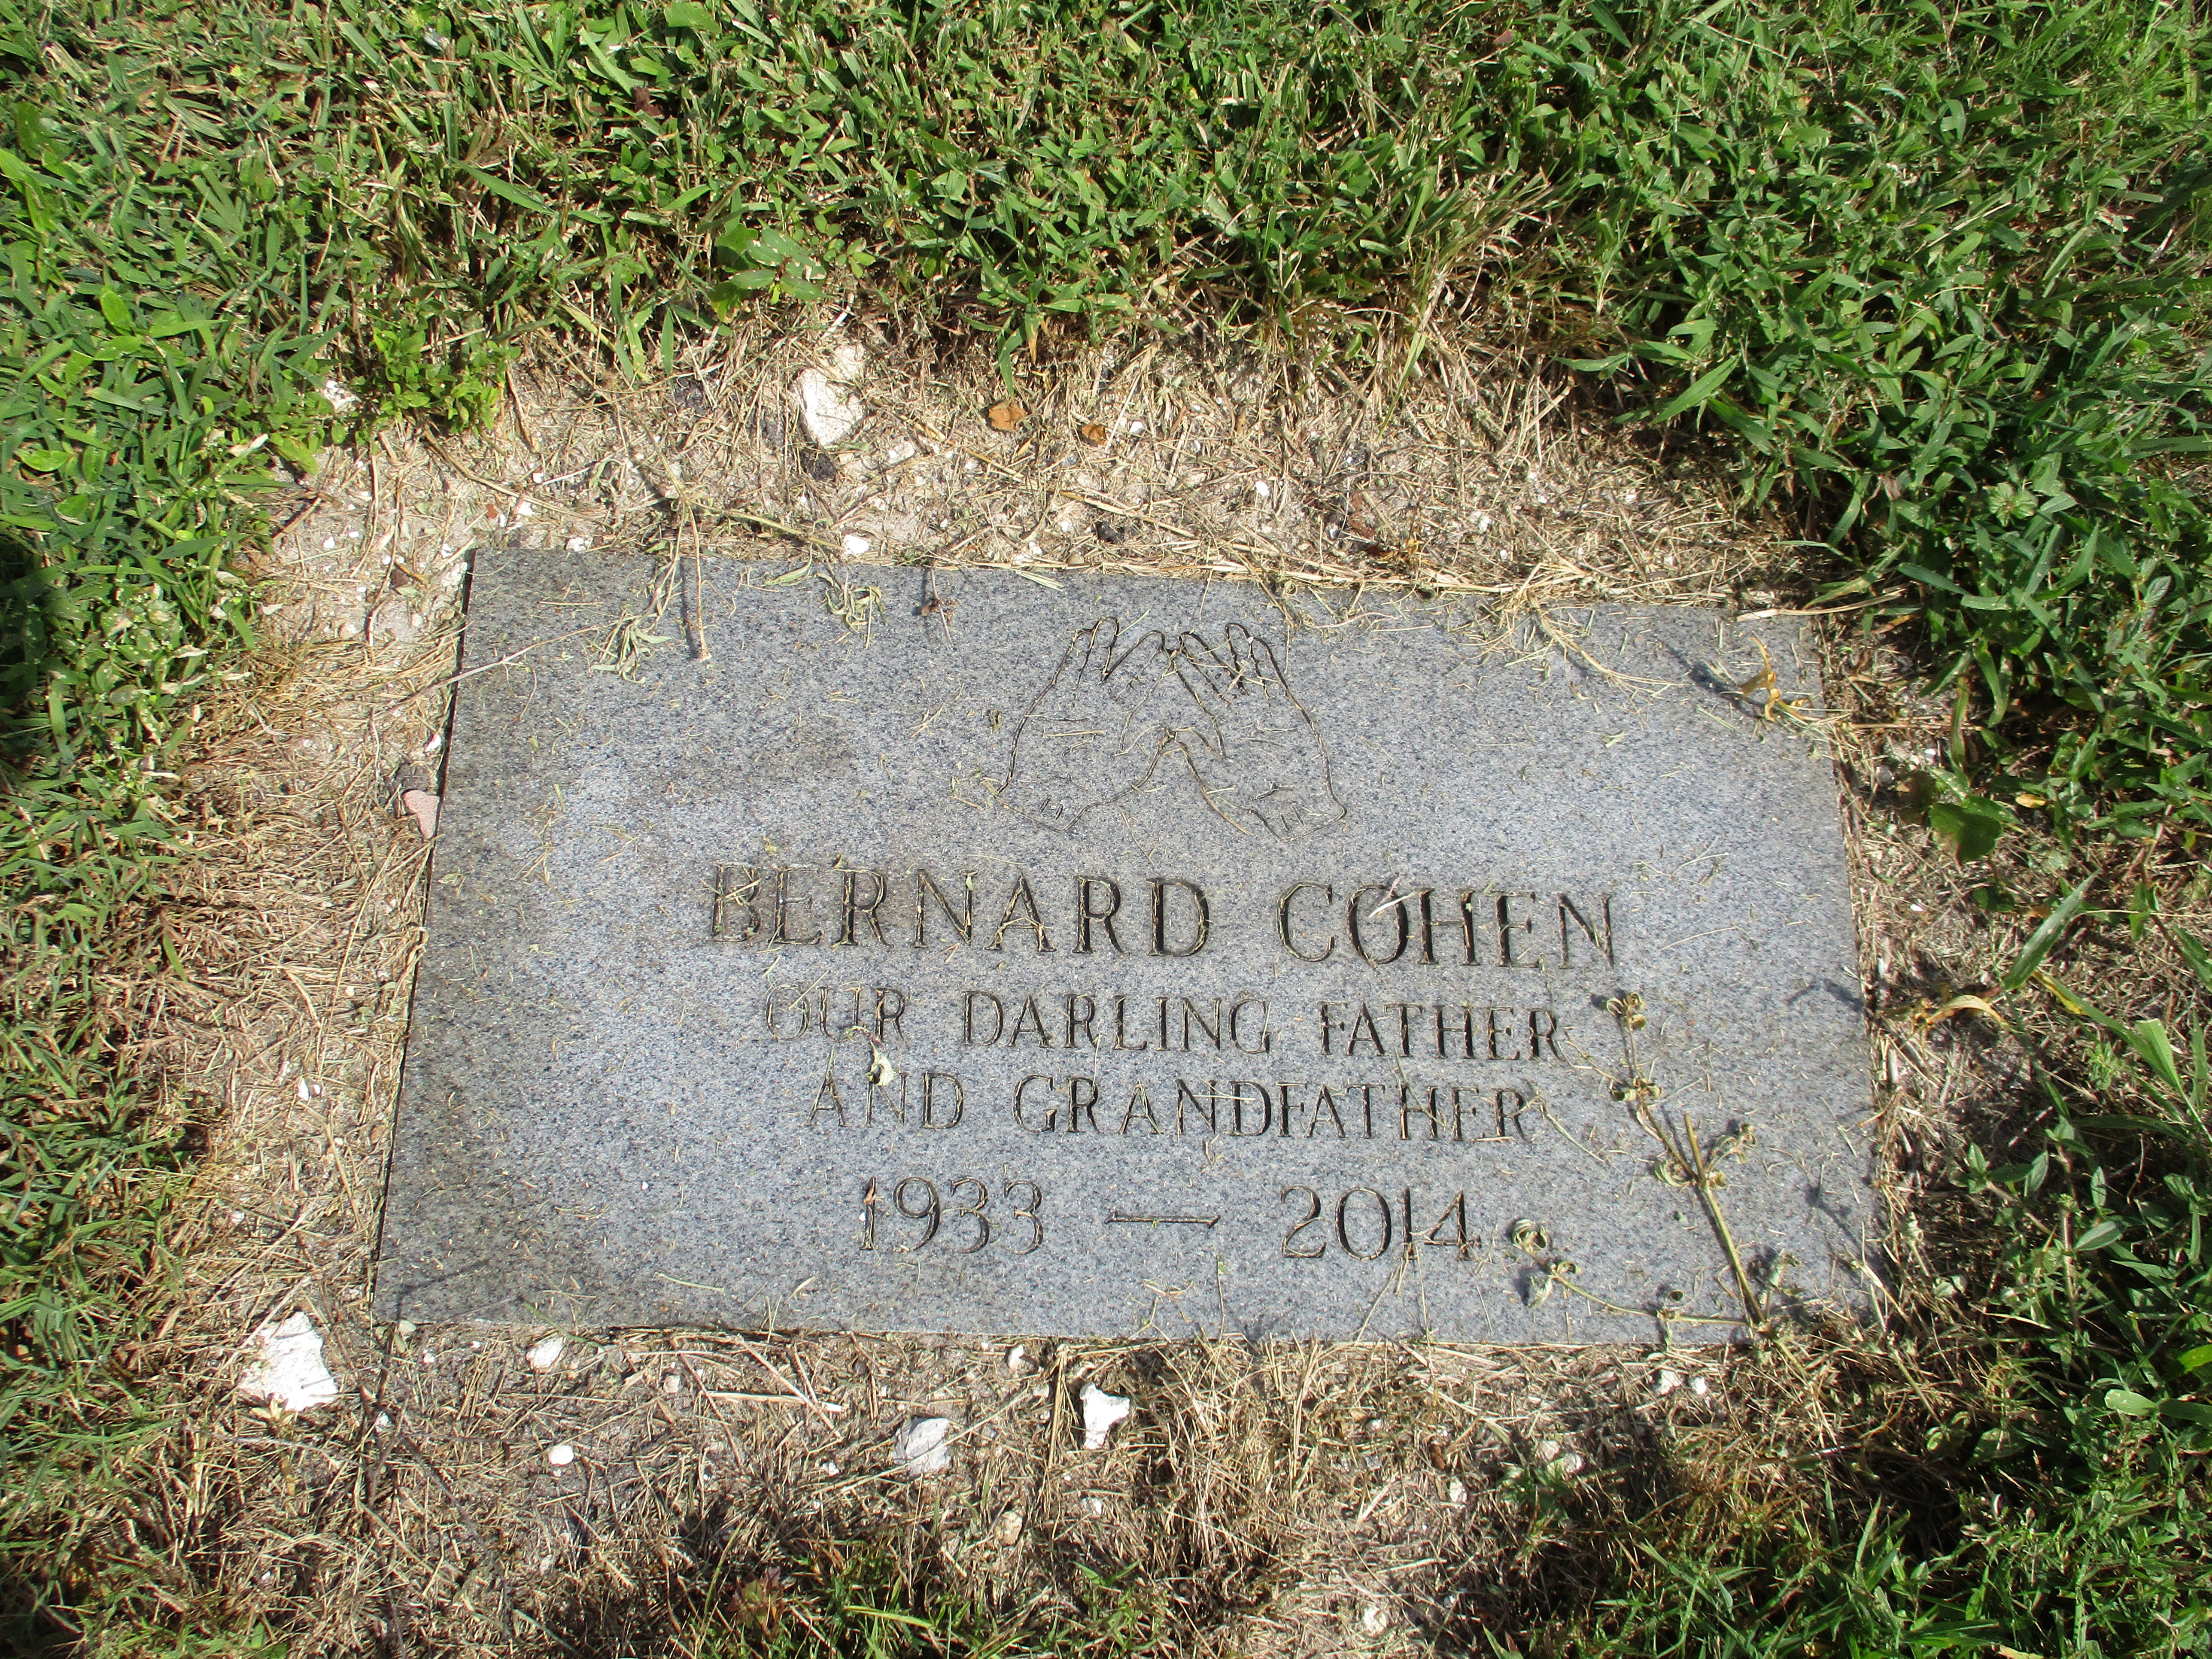 Bernard Cohen